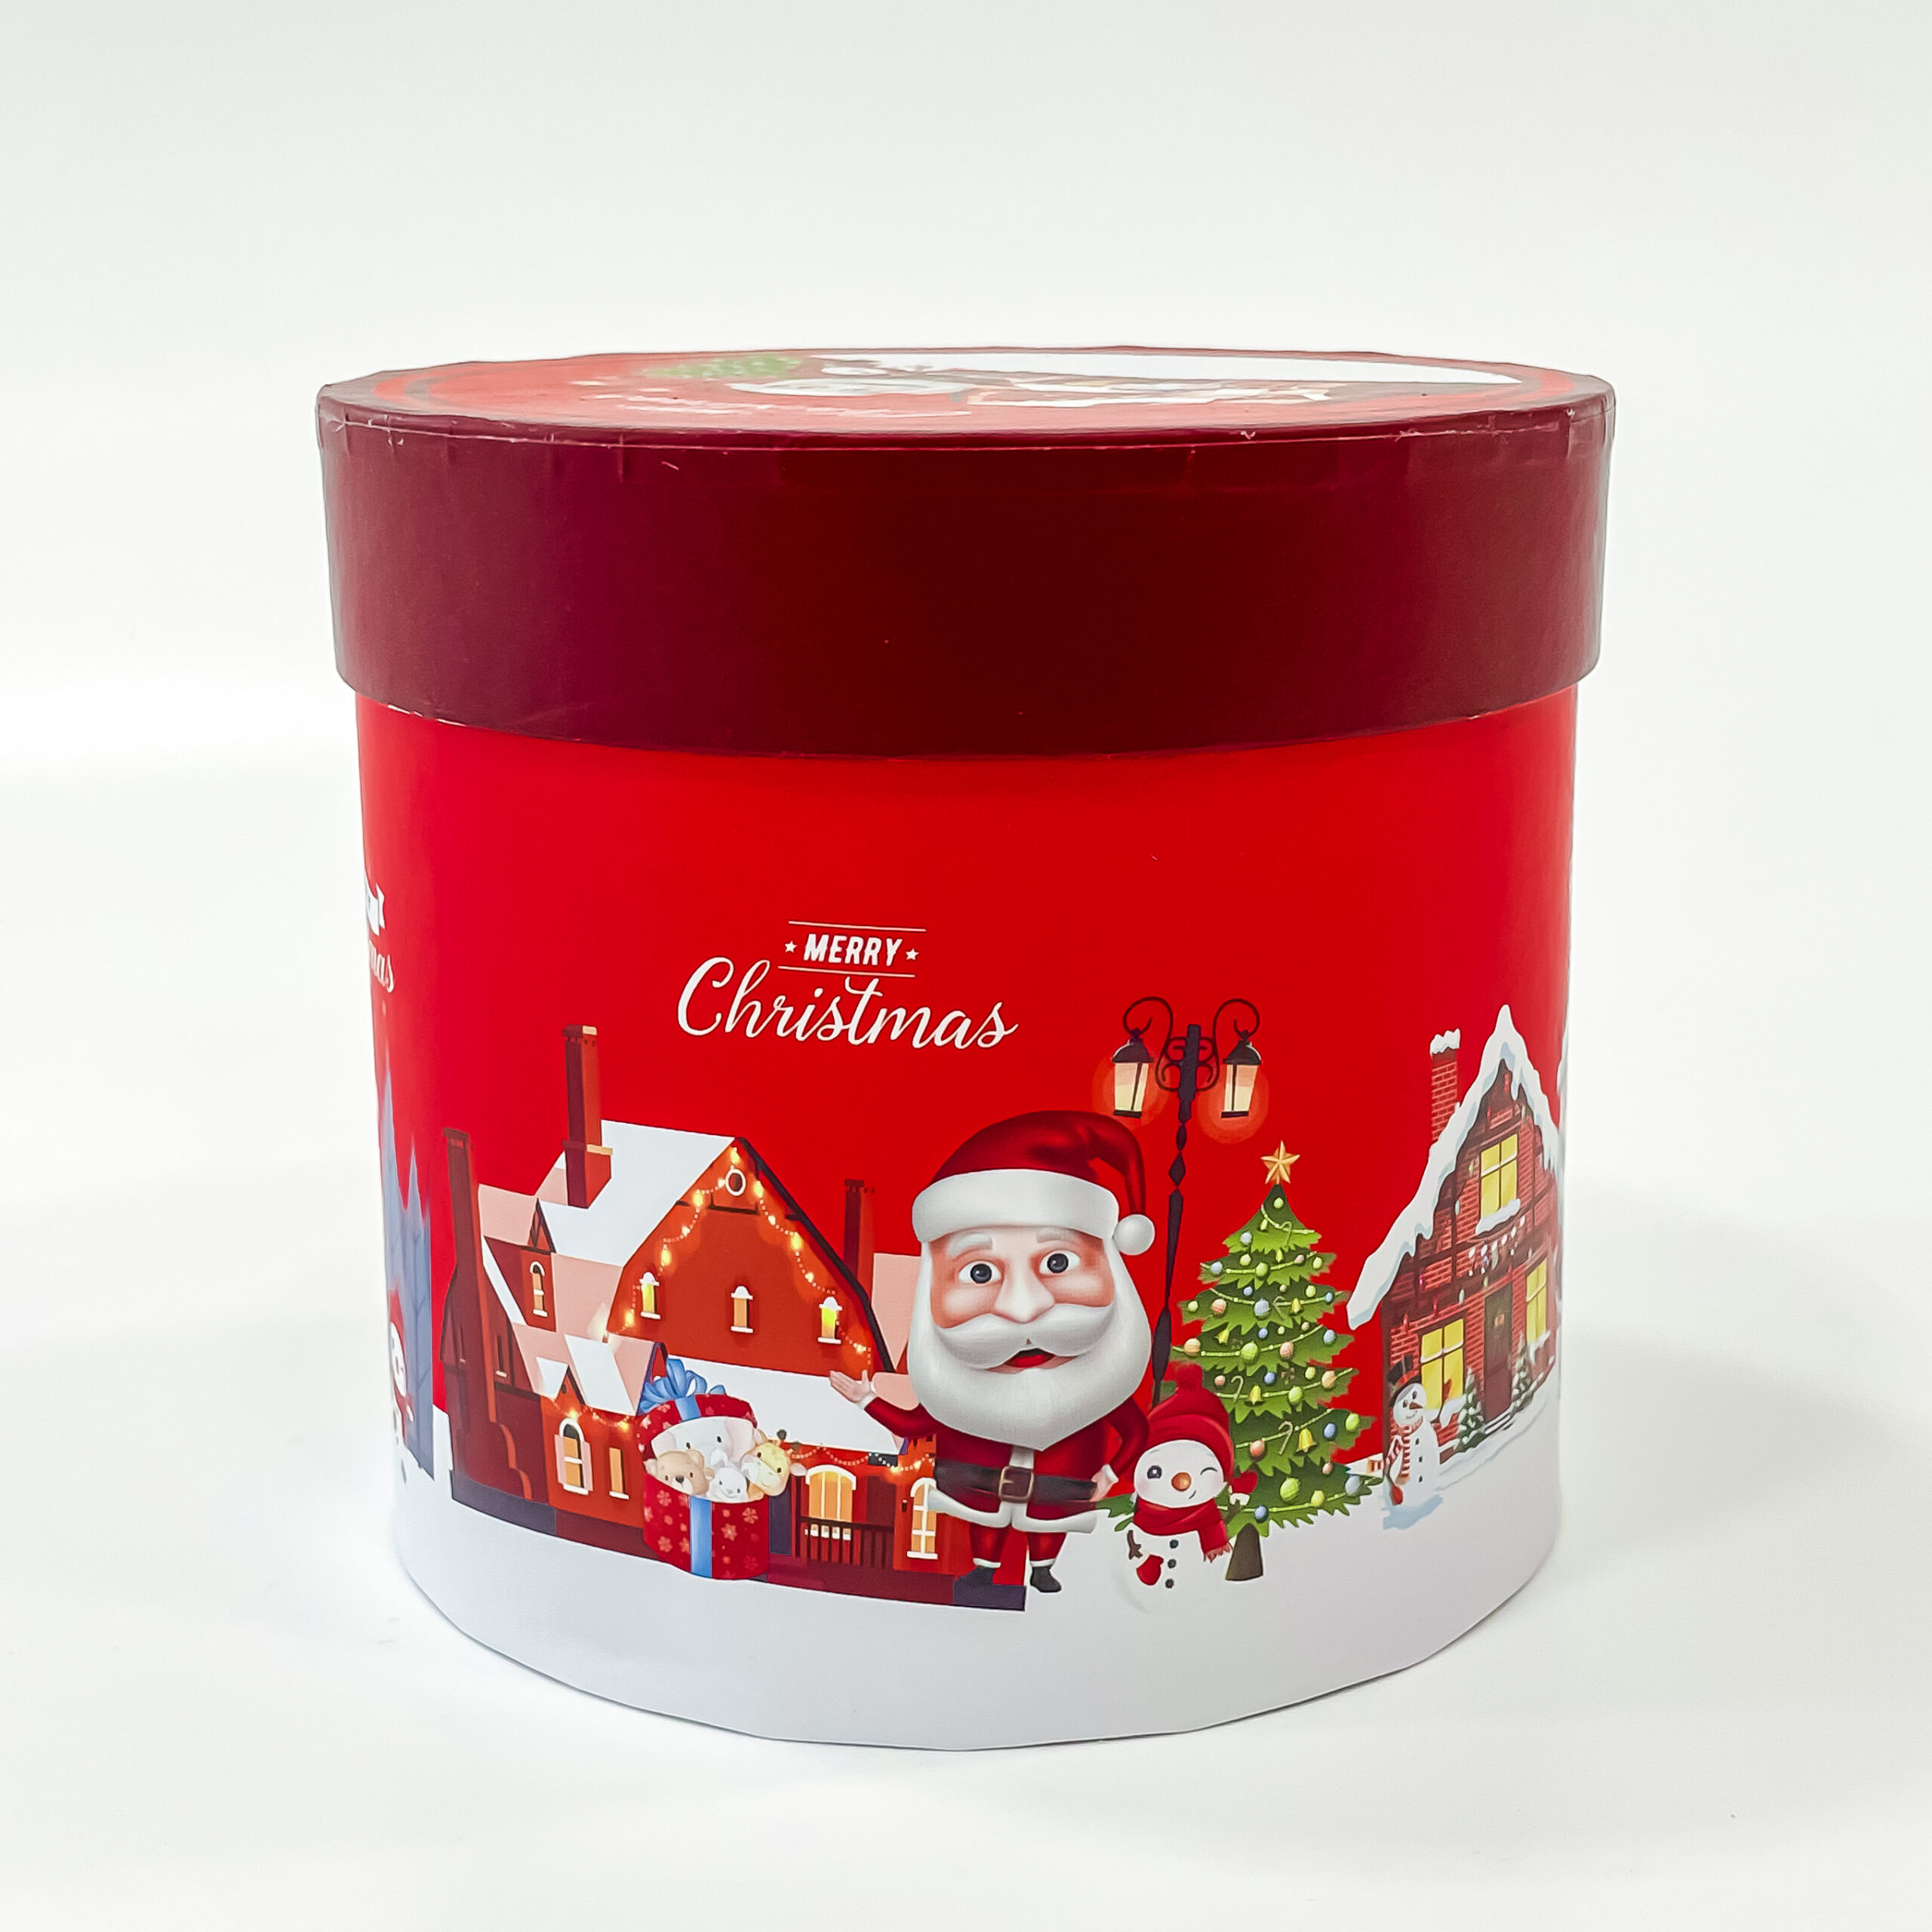 Christmas mug with cylindrical box